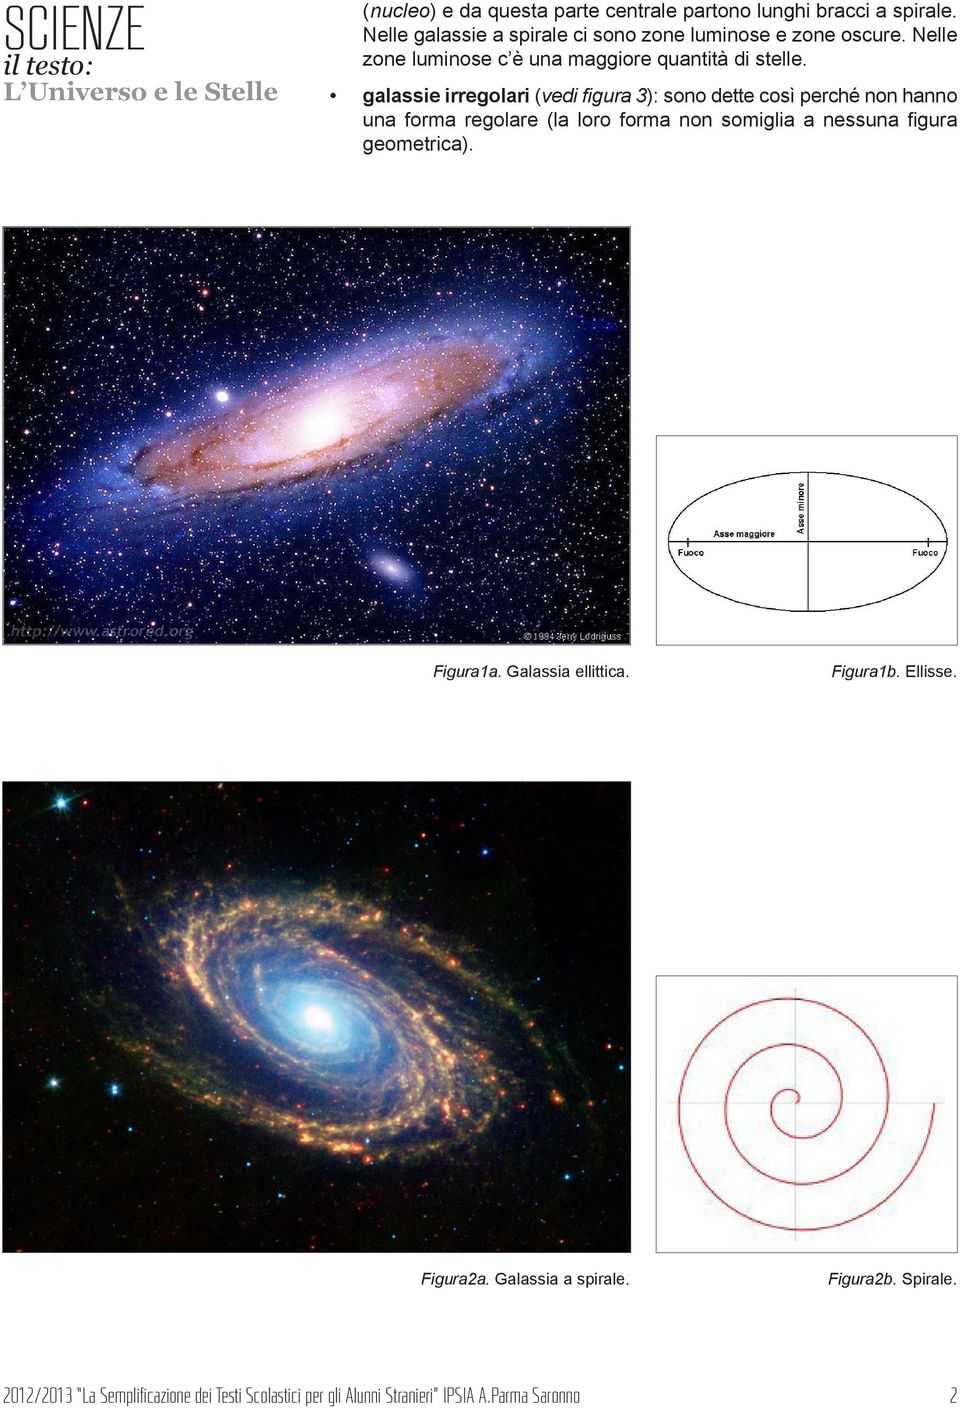 galassie irregolari (vedi figura 3): sono dette così perché non hanno una forma regolare (la loro forma non somiglia a nessuna